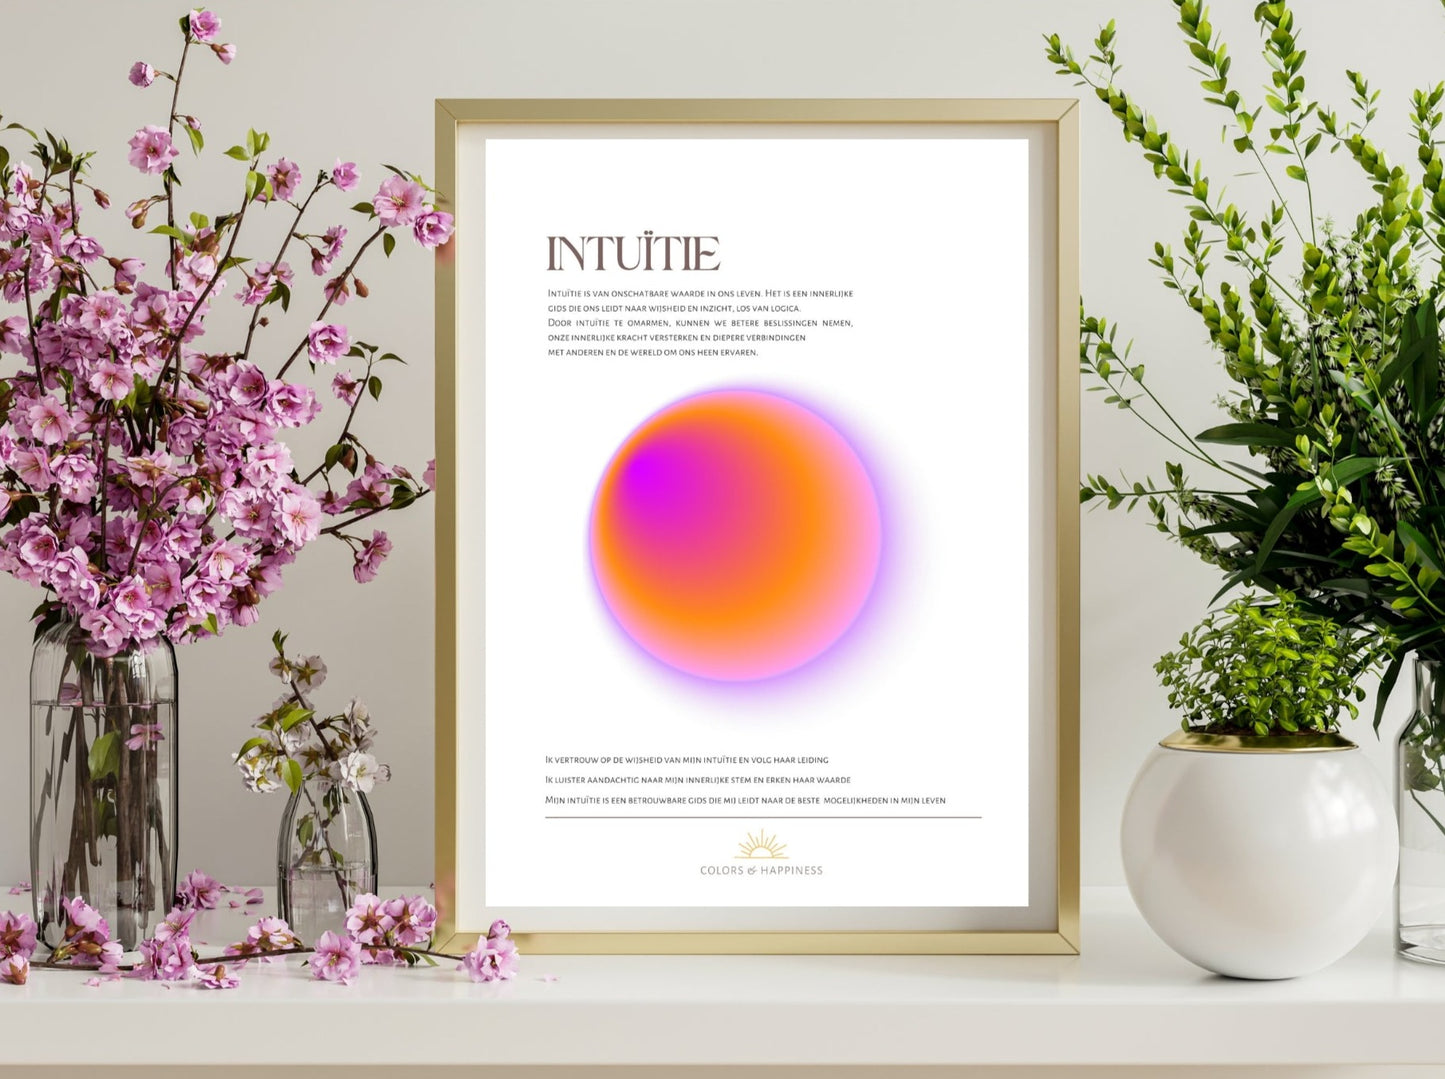 Stijlvolle poster met als thema intuïtie, digitale download voor een bewuster leven